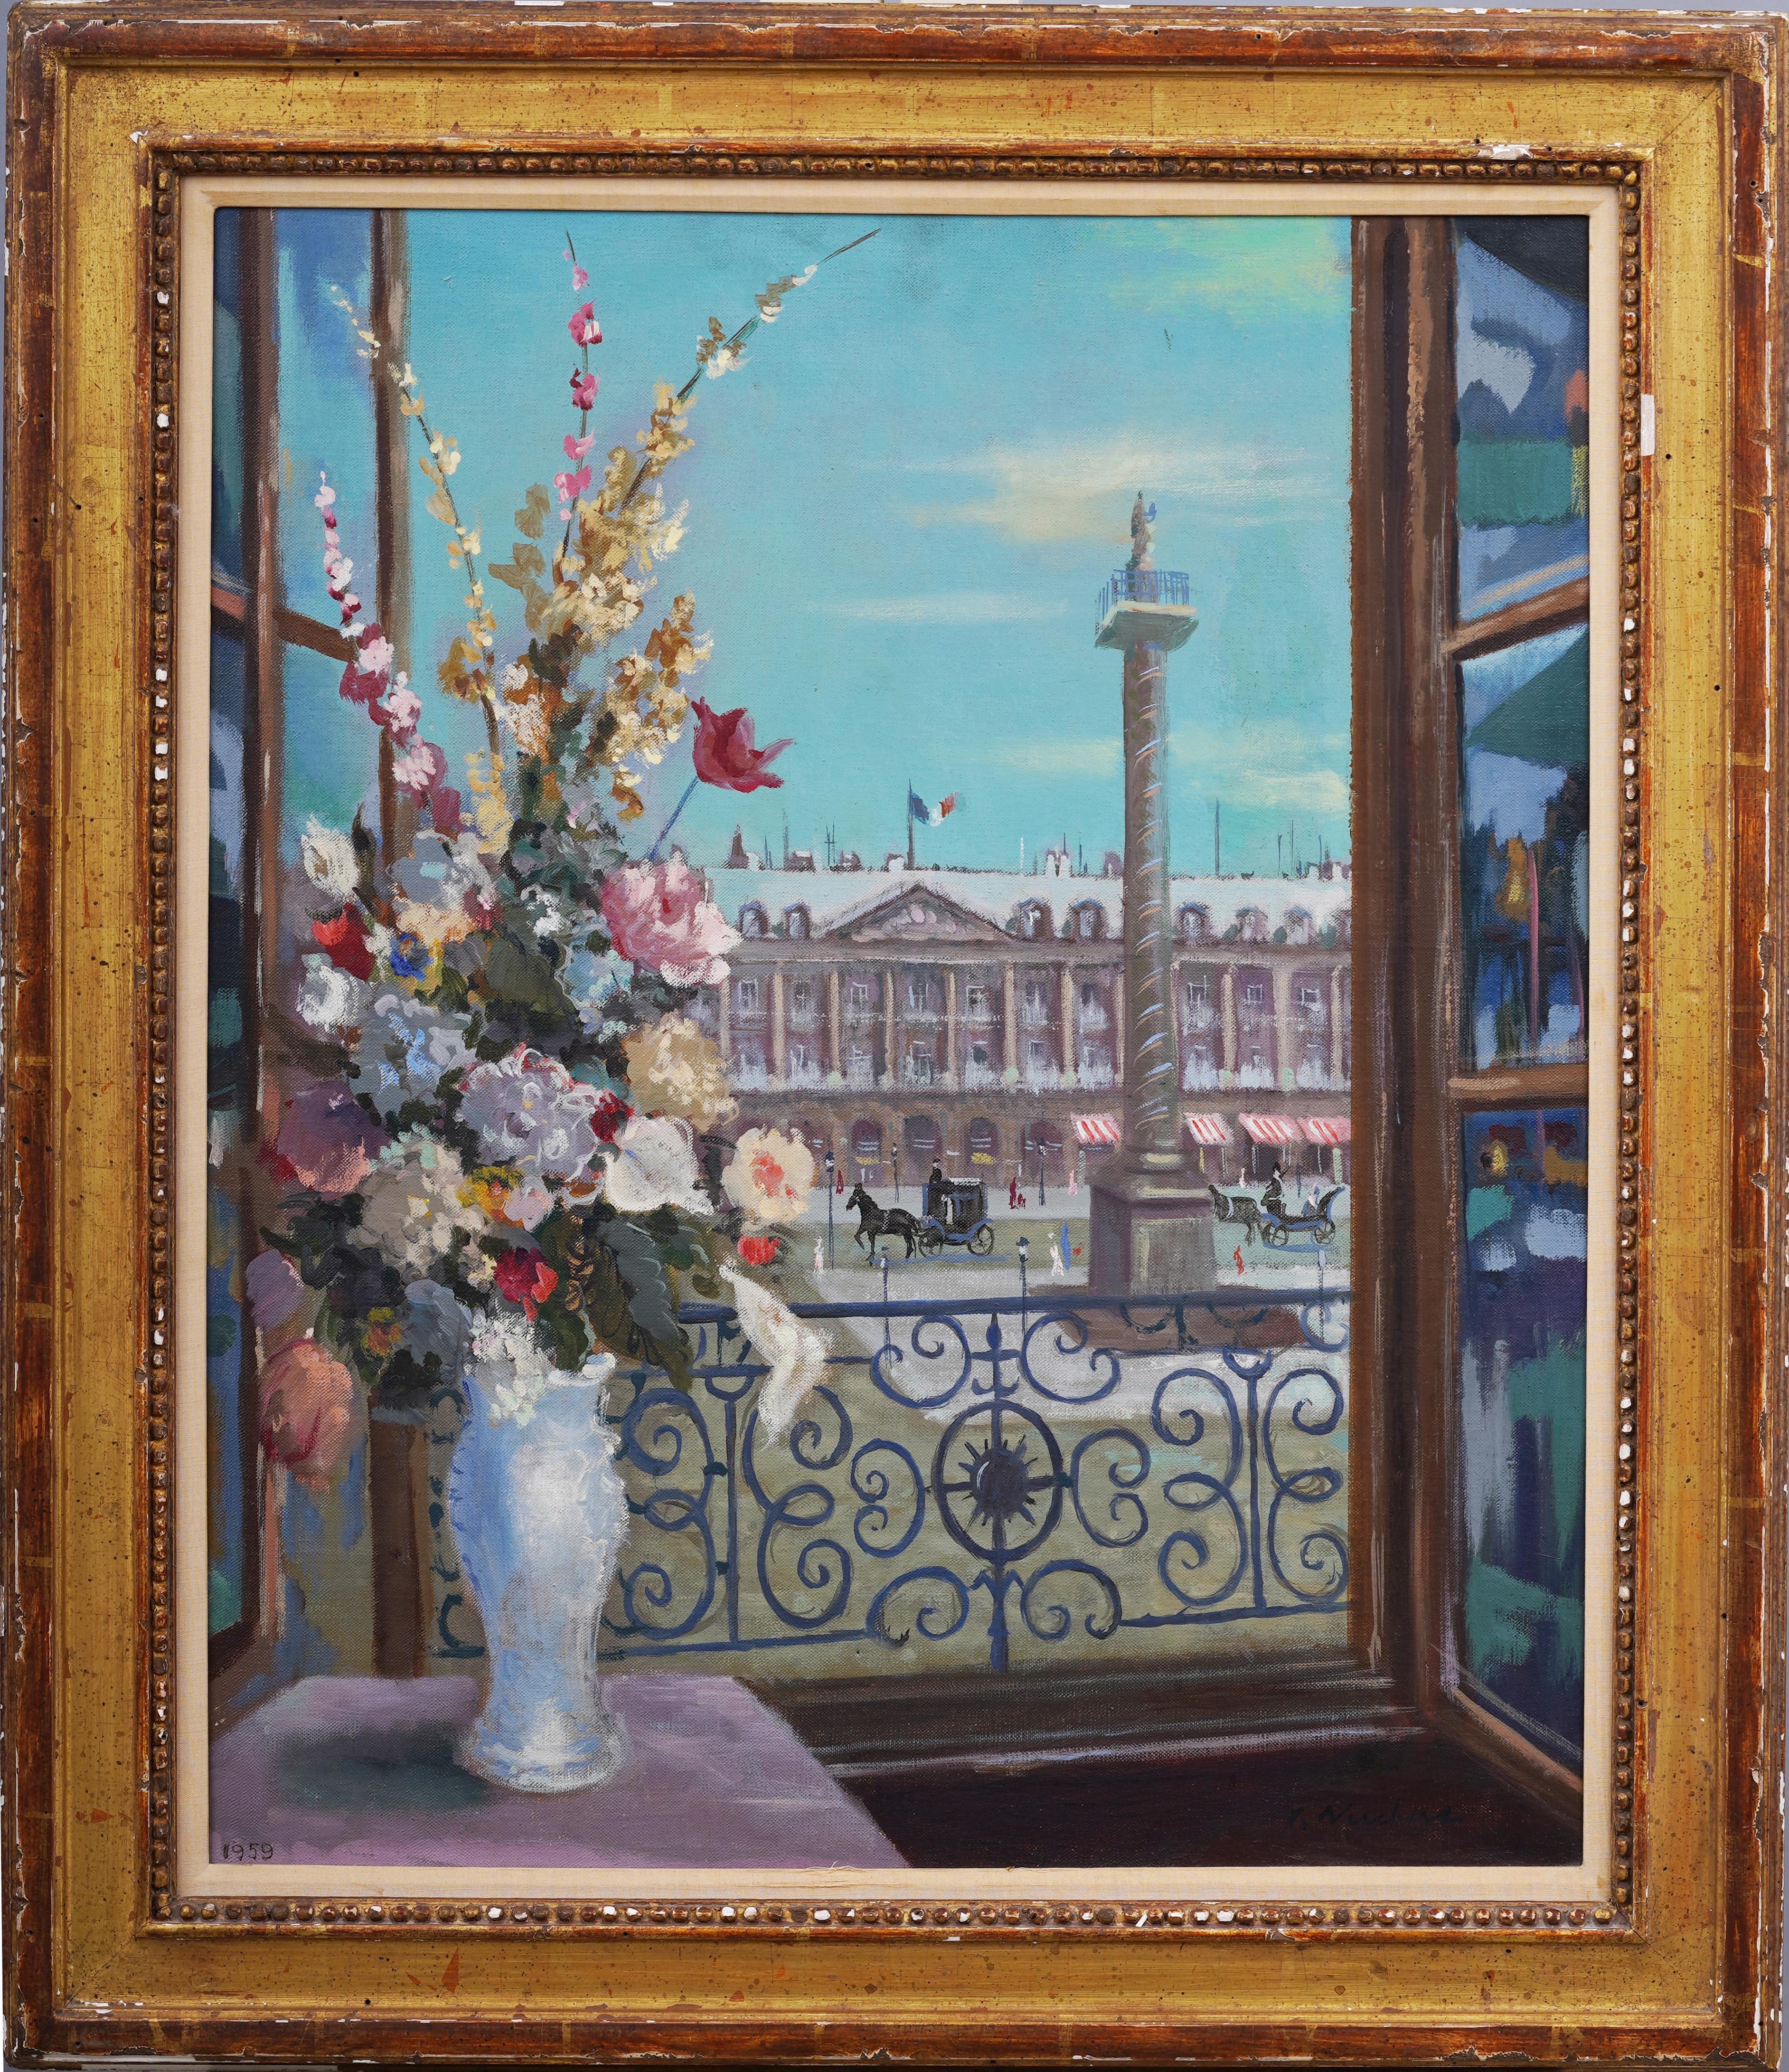 Ancienne peinture de fenêtre de style impressionniste français représentant une scène de rue de Paris encadrée